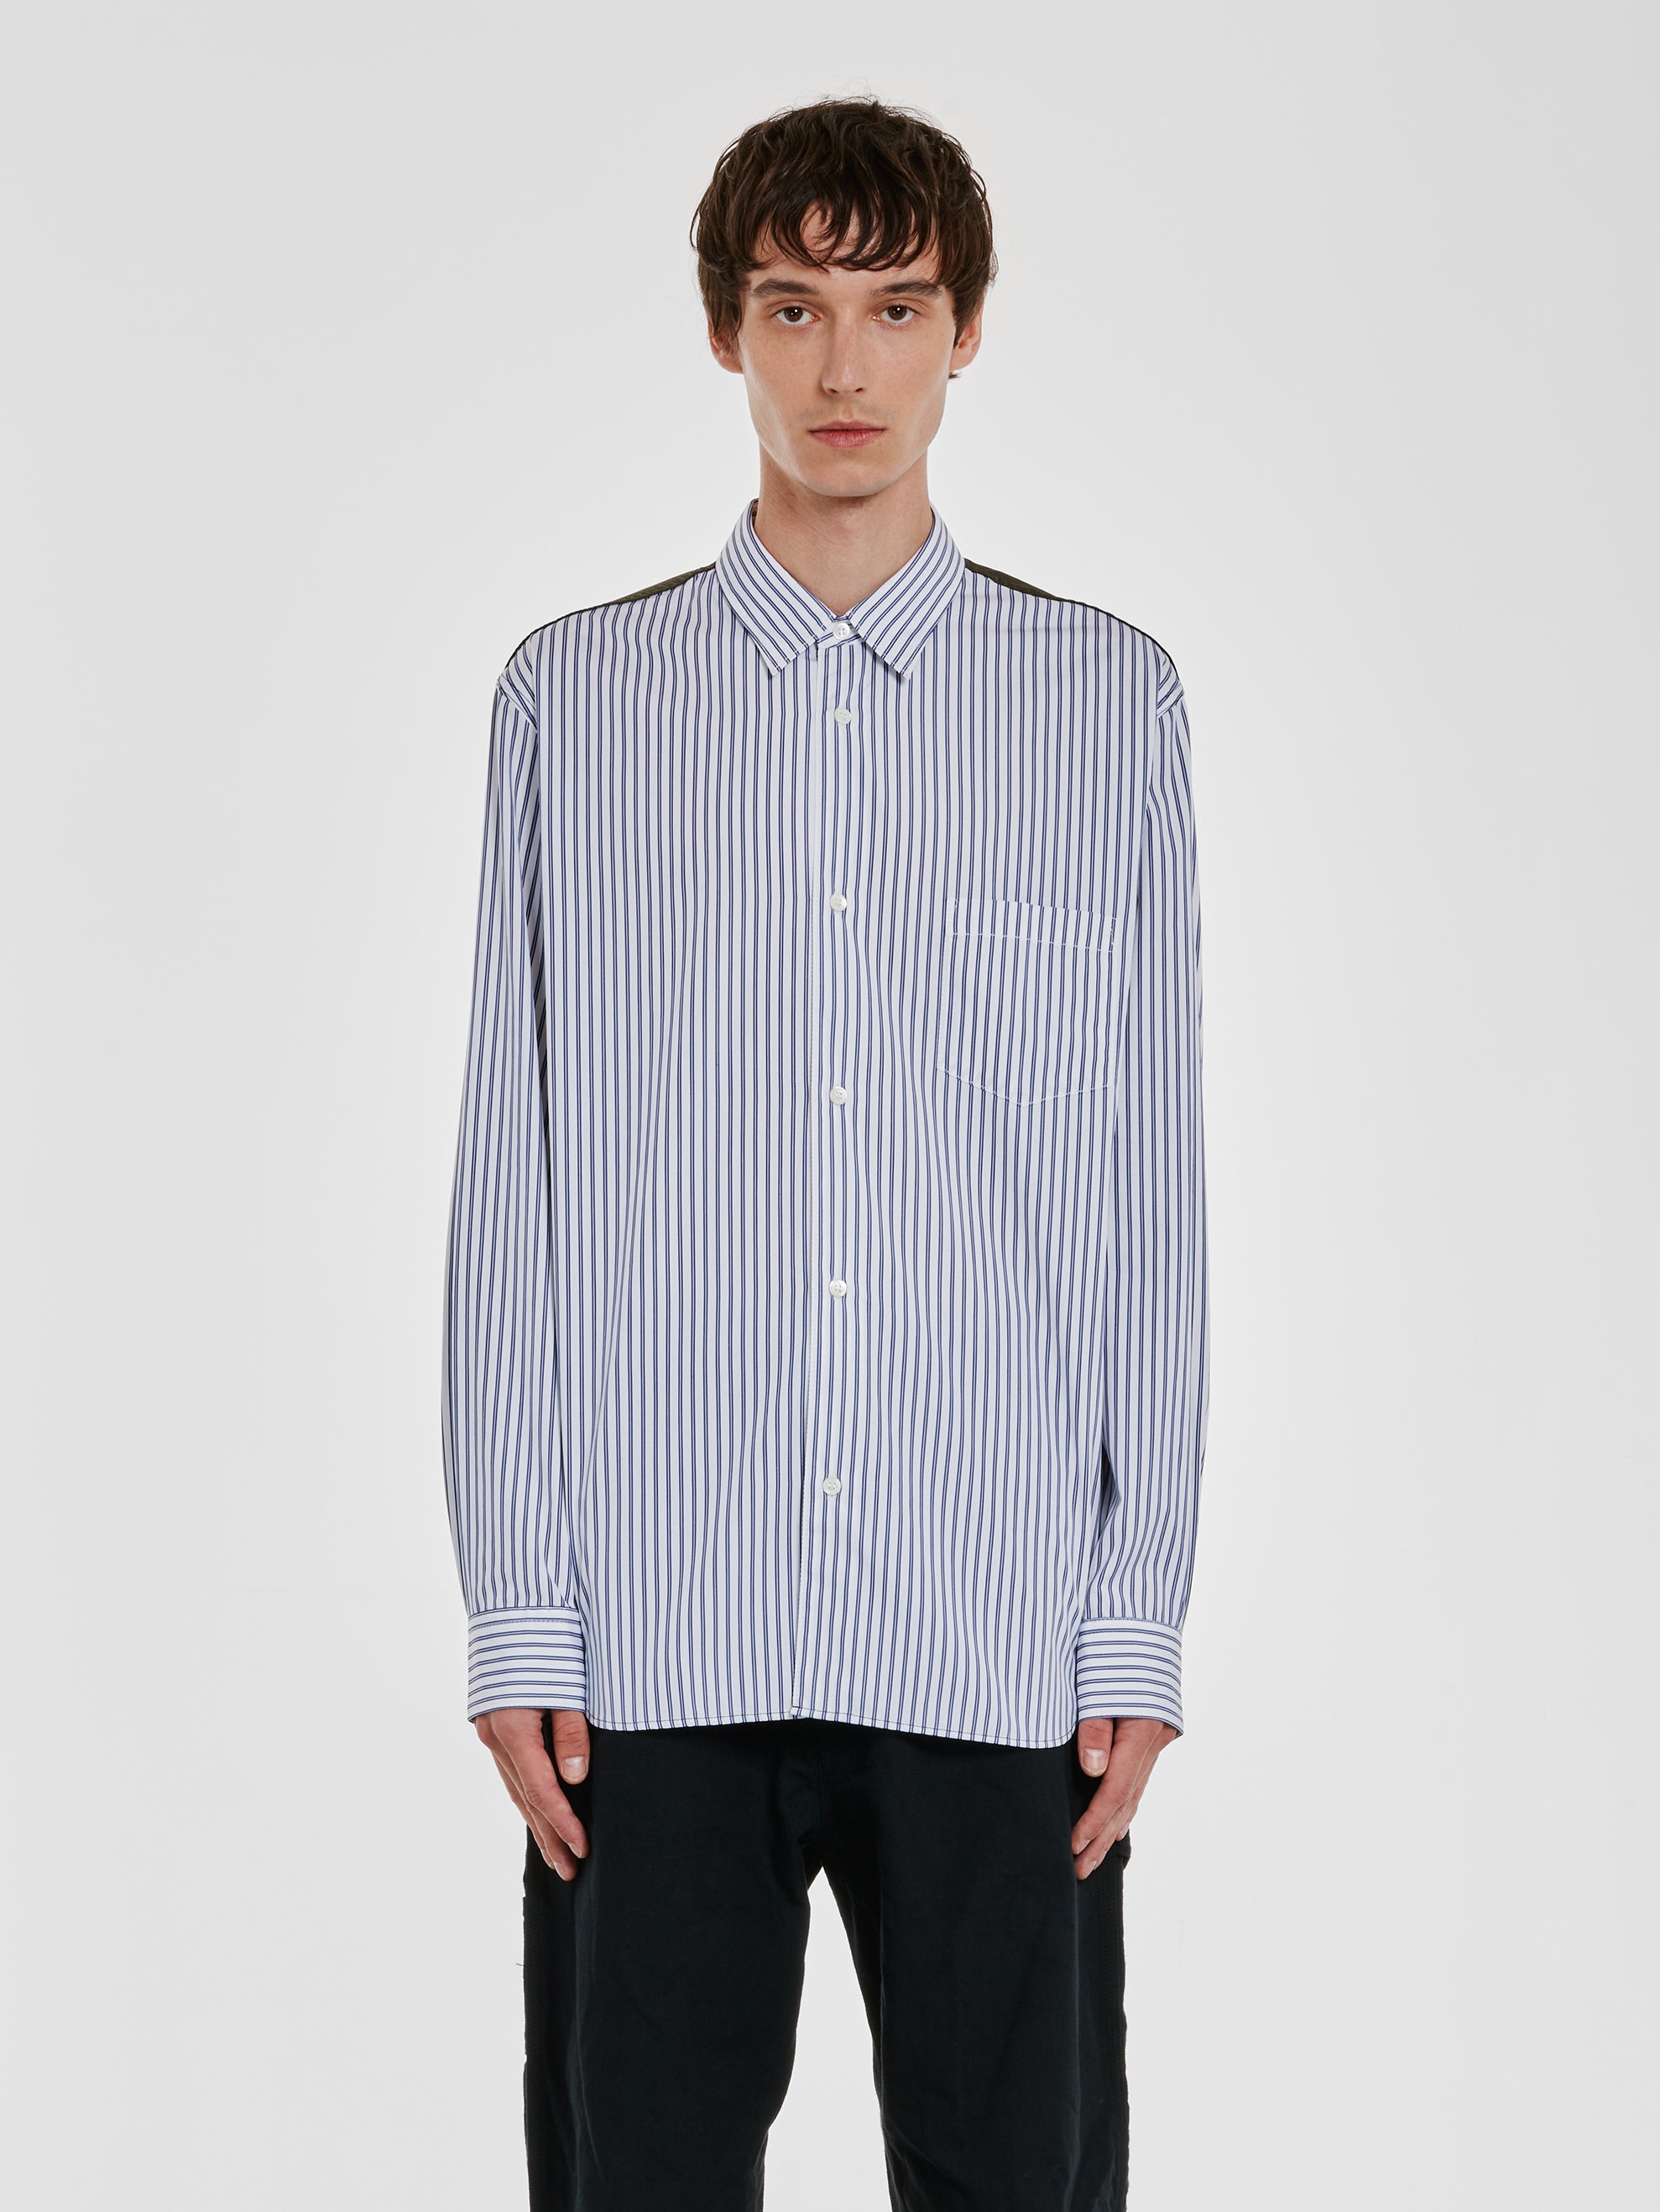 Comme des Garçons Homme - Men’s Contrast Nylon Shirt - (White/Blue/Khaki) view 1